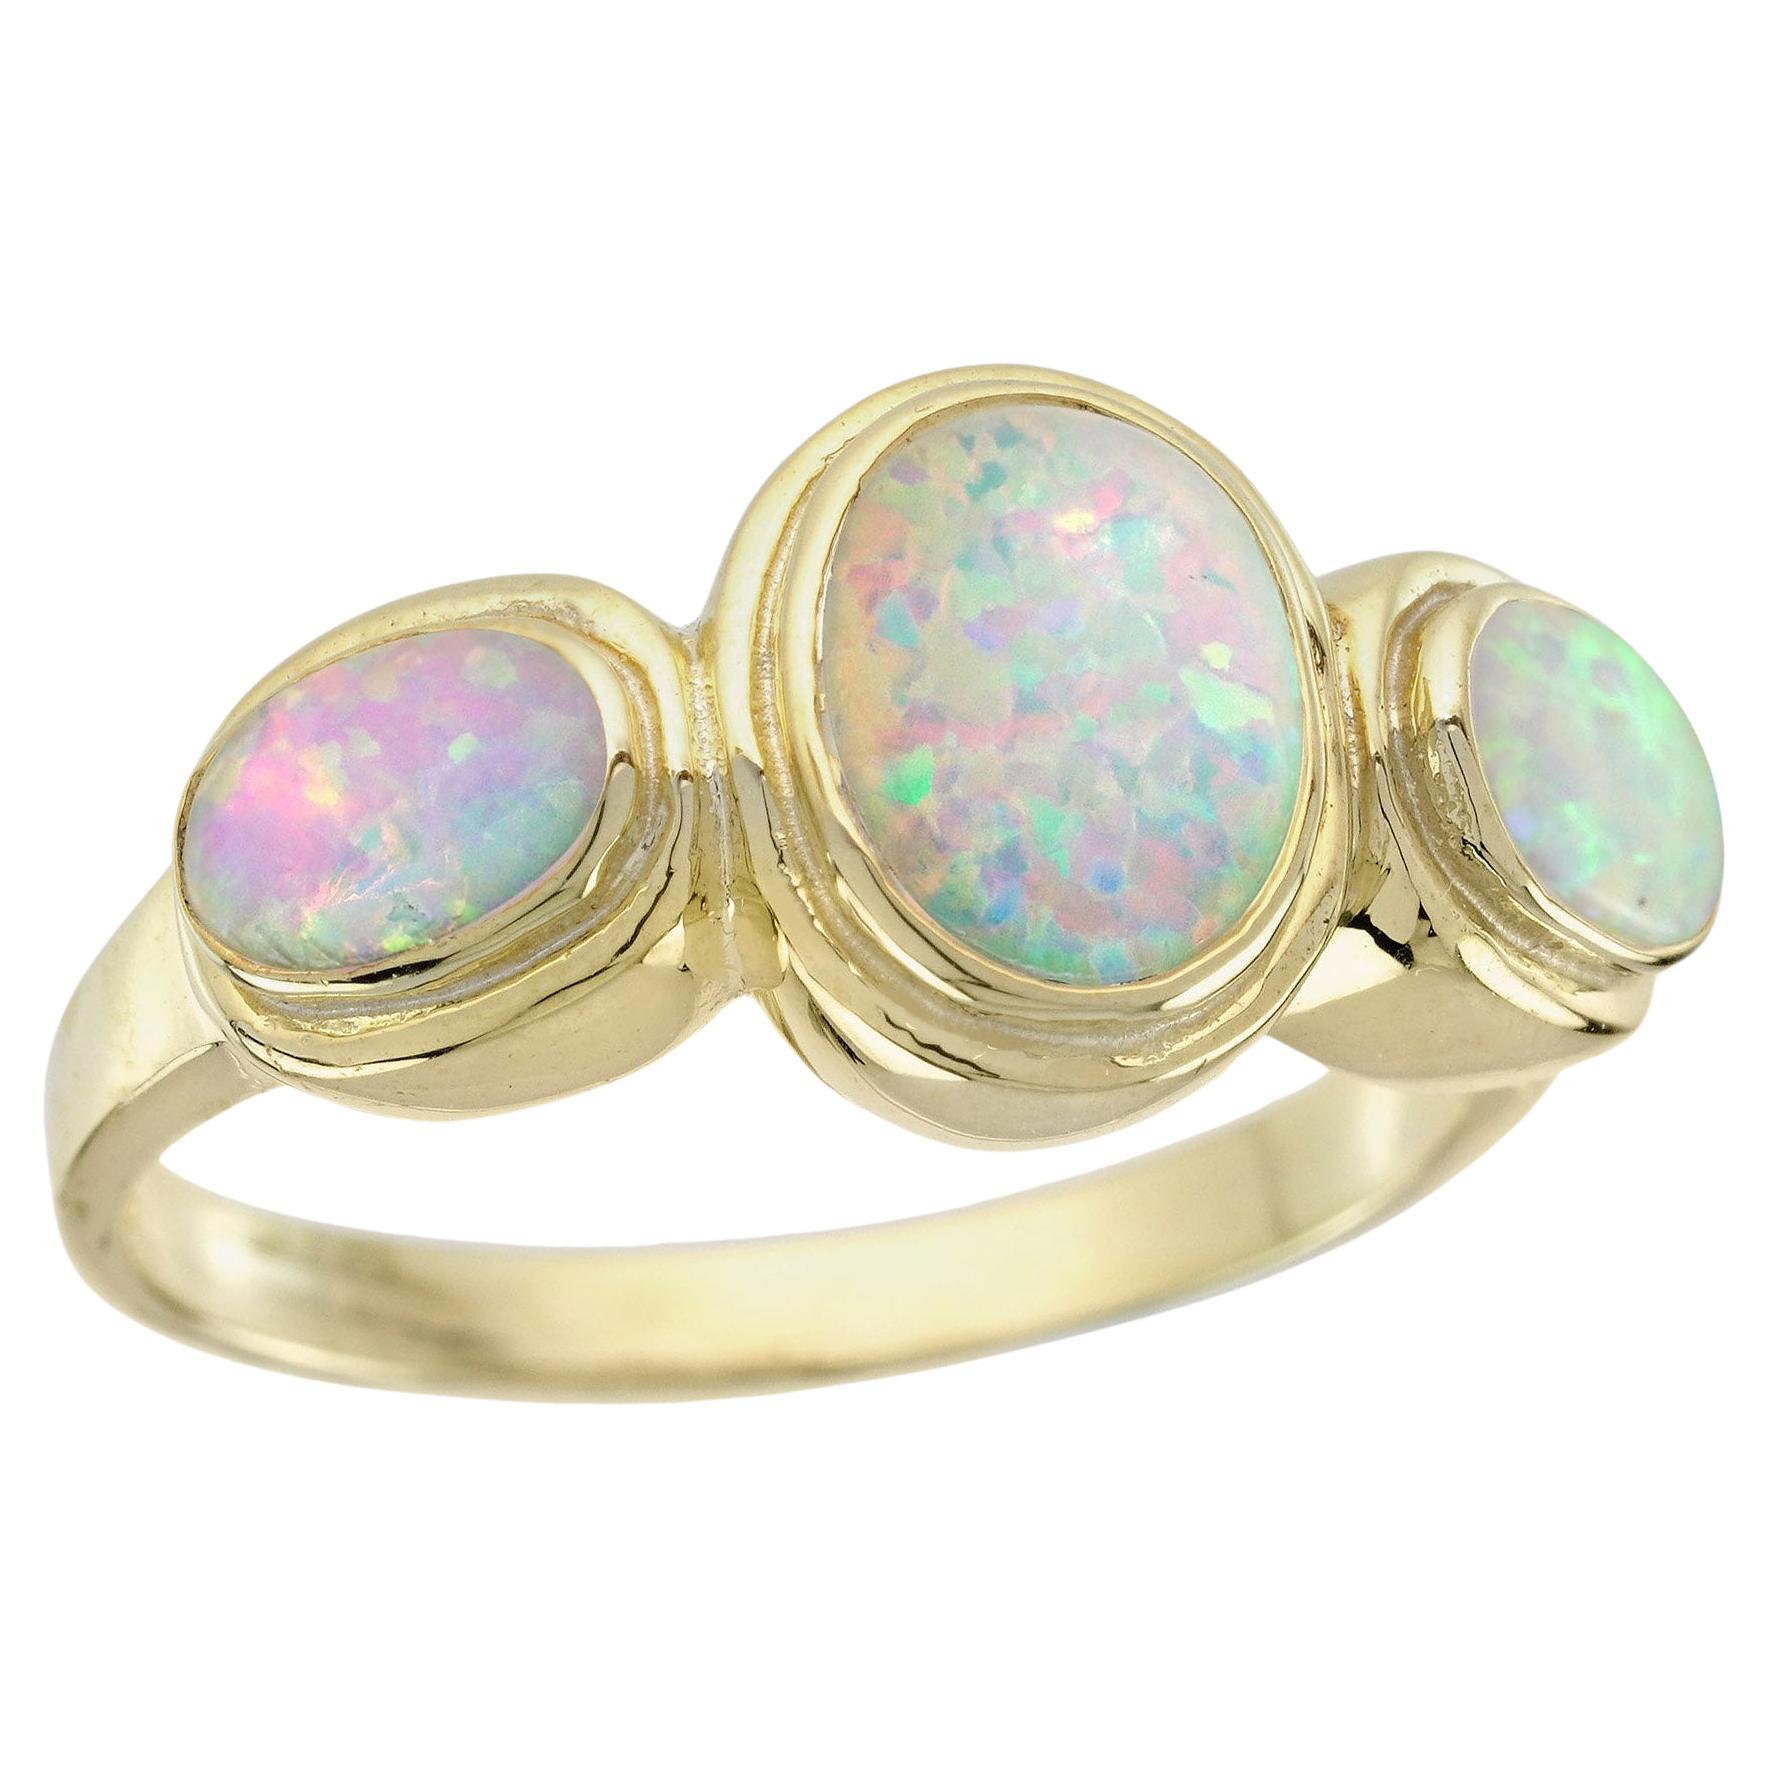 Natürlicher Opal im Vintage-Stil mit drei Steinen aus massivem 9K Gelbgold